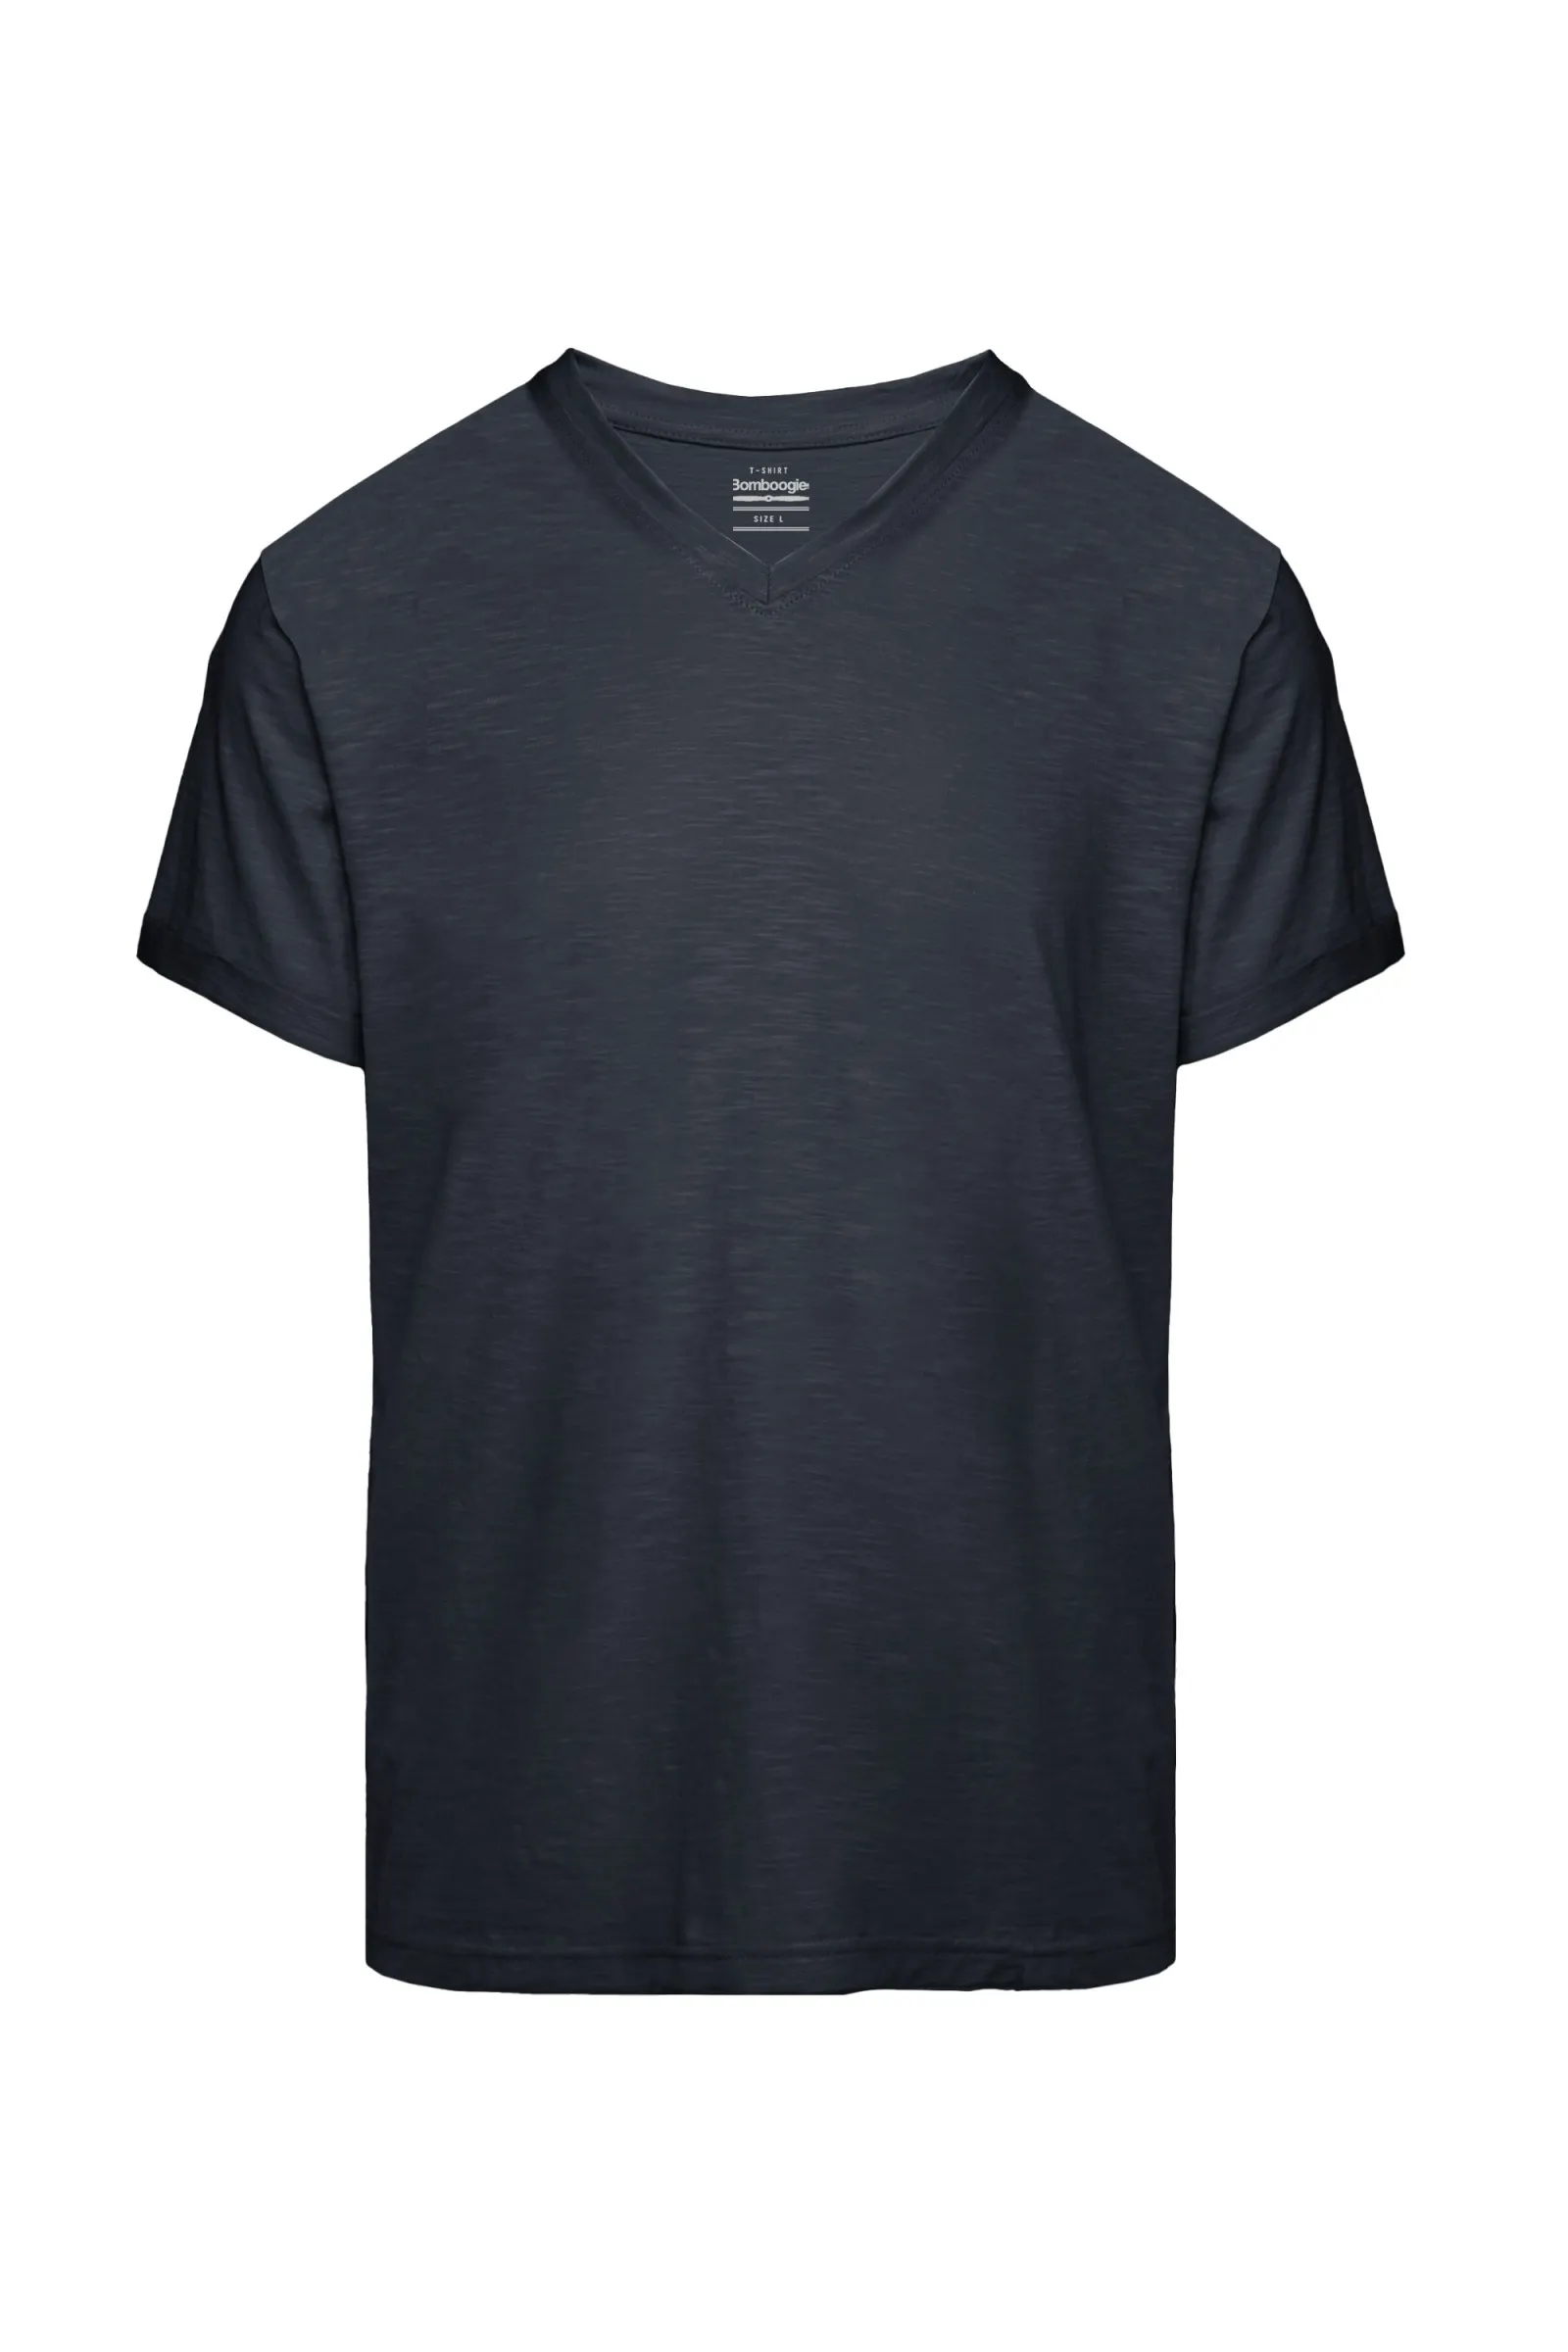 Bomboogie T-shirt da uomo in cotone con scollo a V in jersey fiammato TM7904TJSSG 297 blue poseidone